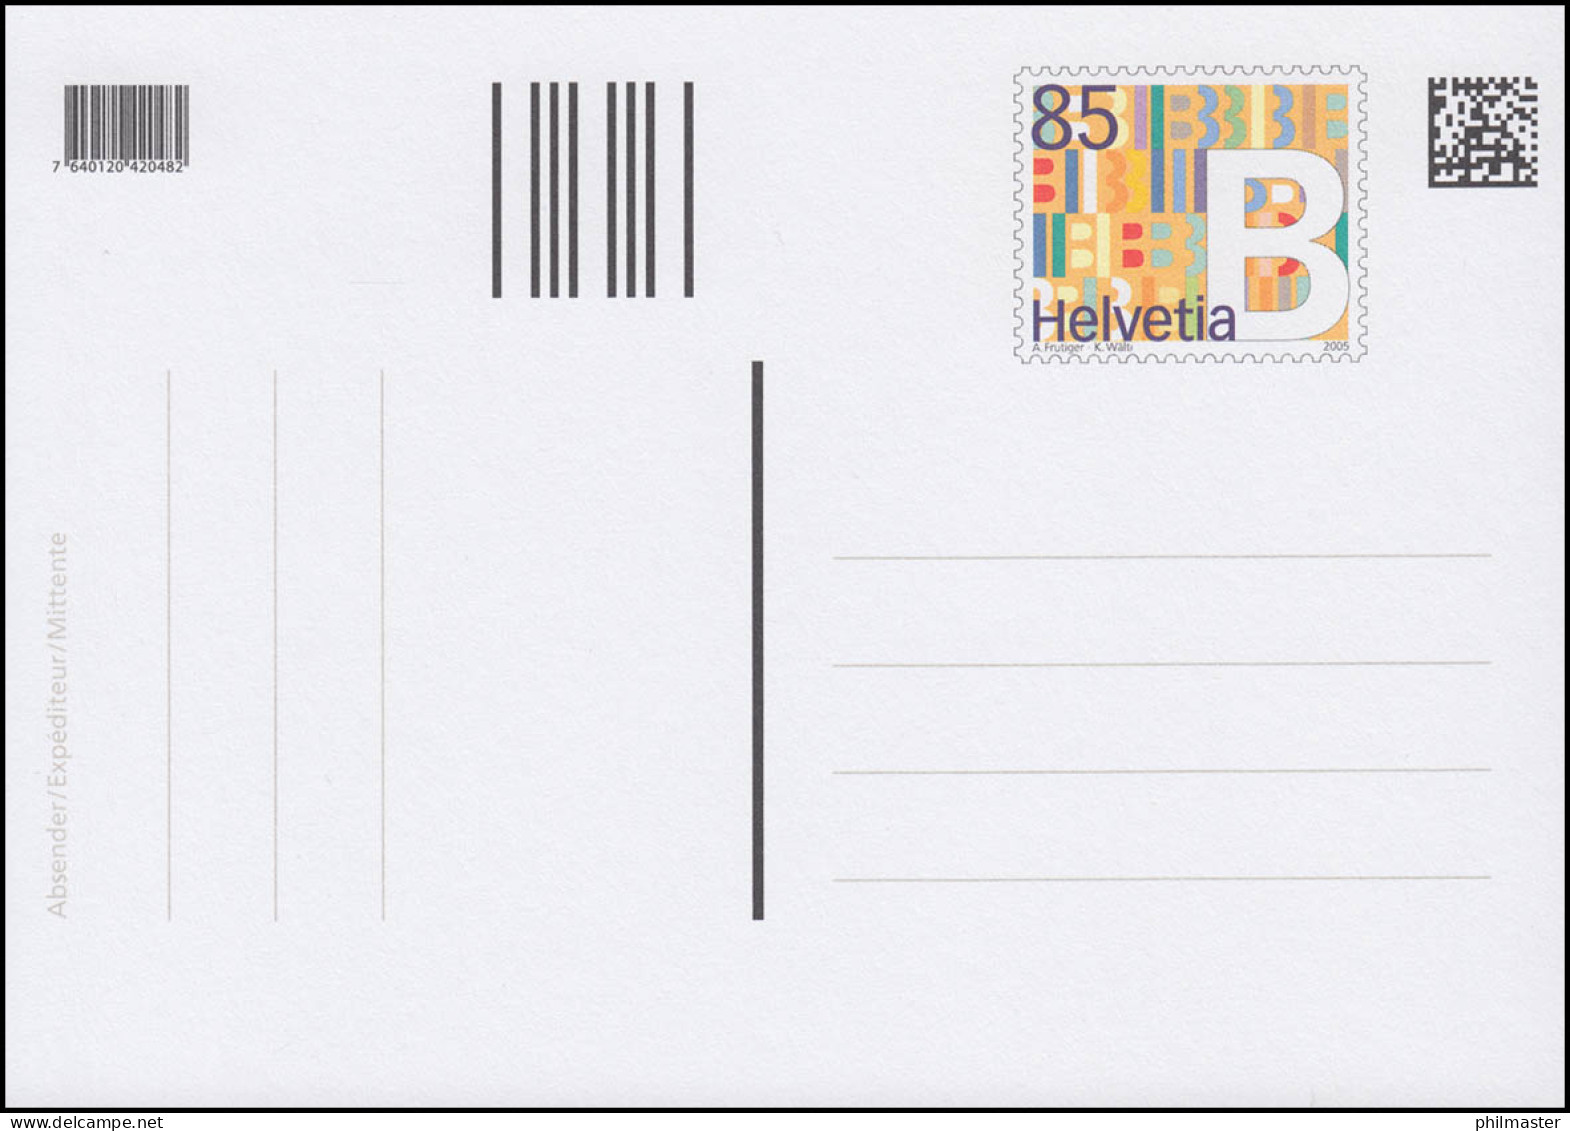 Schweiz Postkarte P 308 Dauerausgabe B-Post 2005, ** Postfrisch - Stamped Stationery